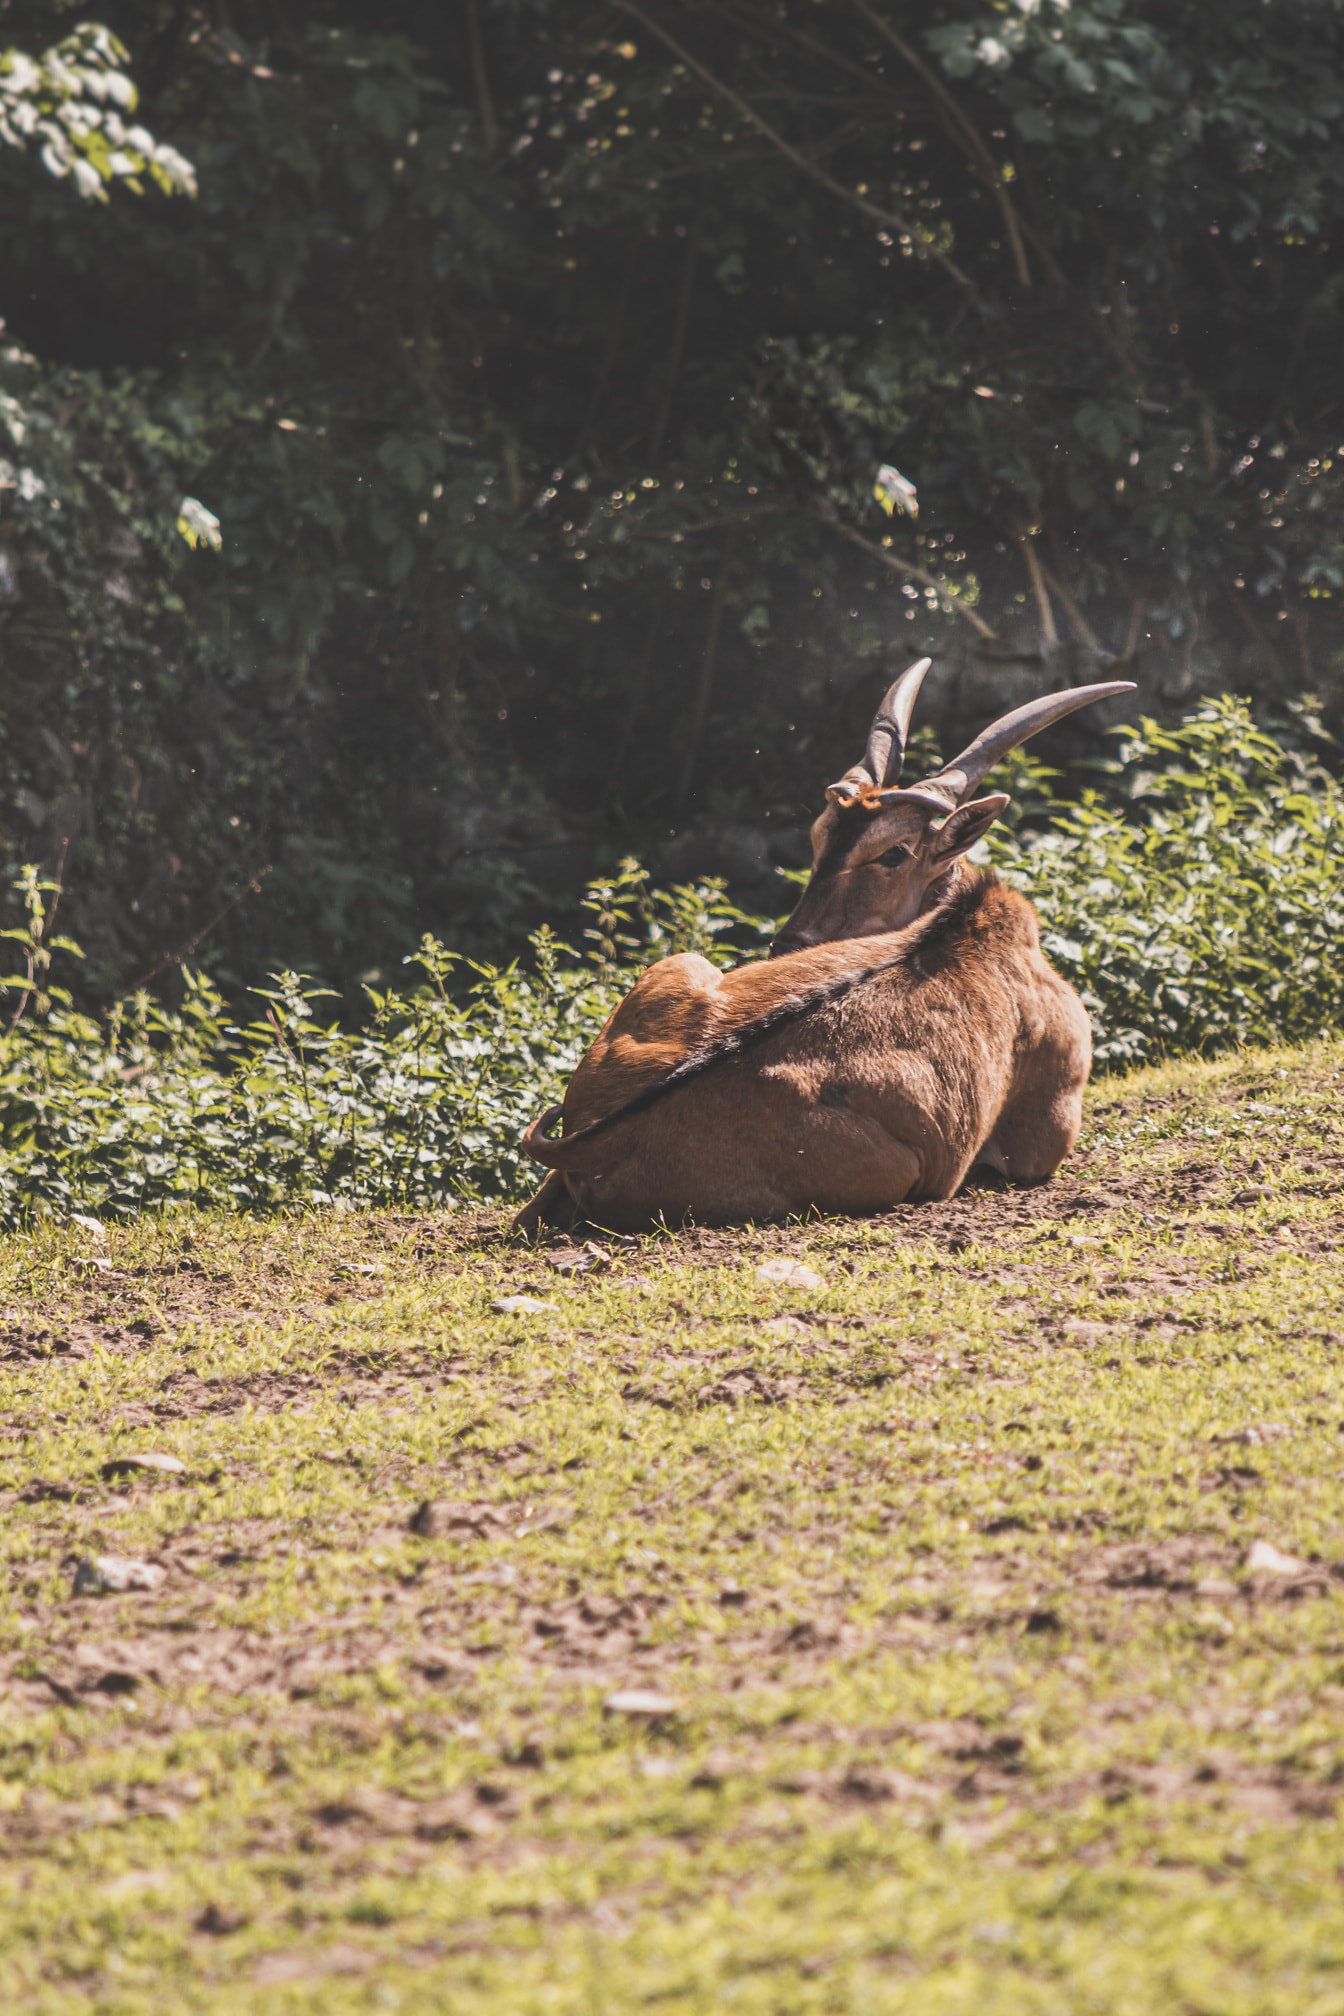 황야의 풀밭에 누워 있는 이랜드 영양 (Taurotragus oryx)